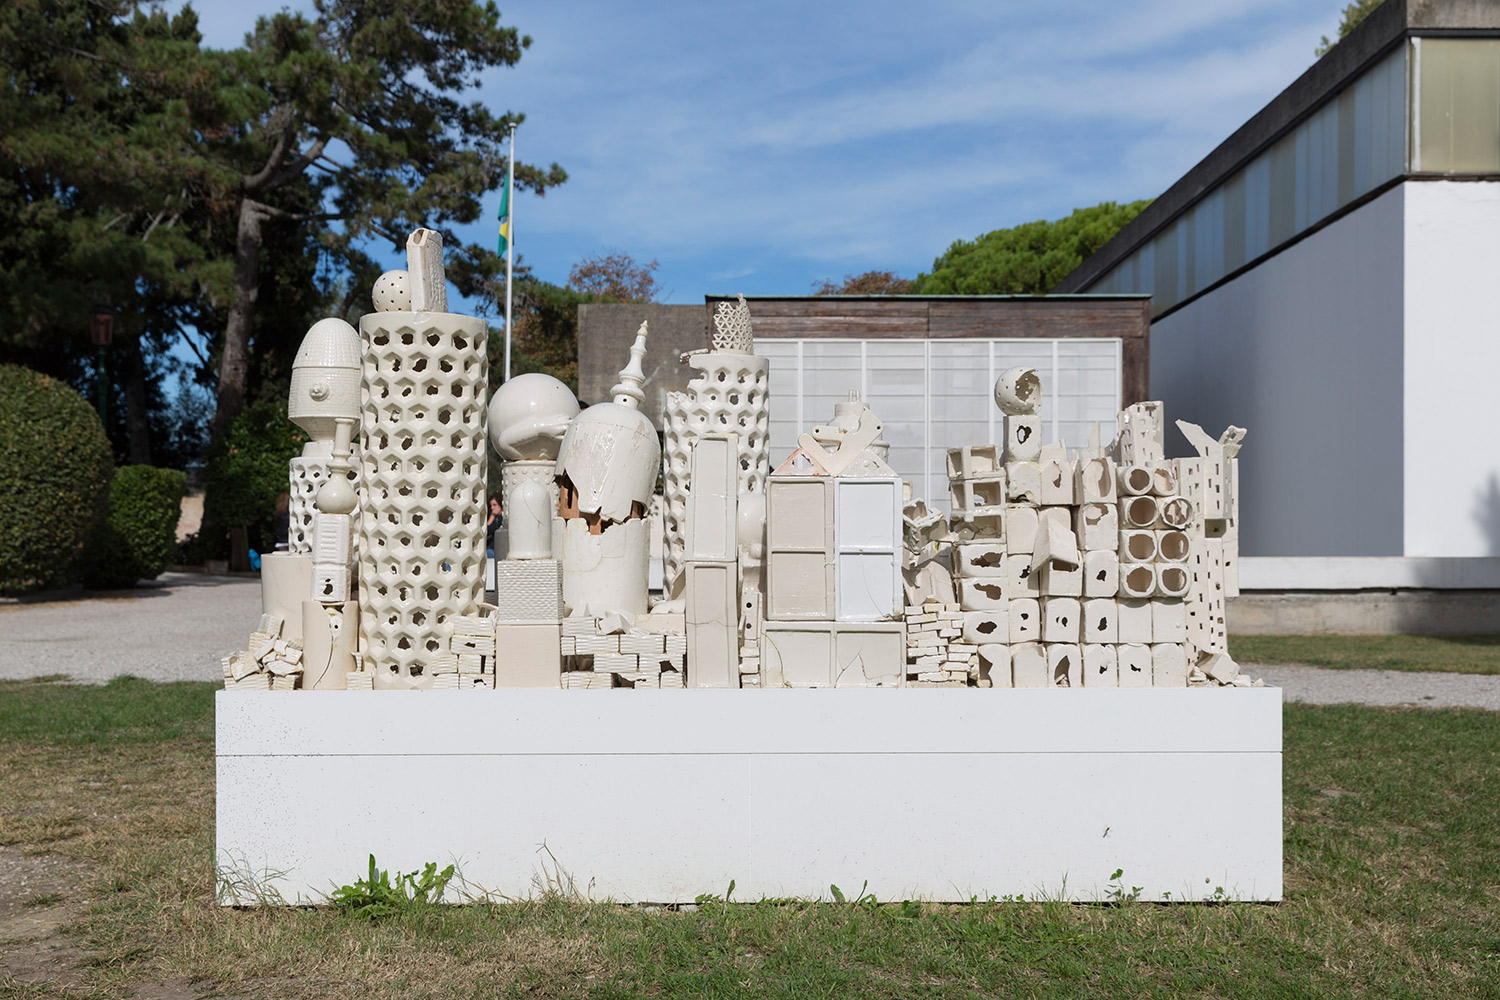   Alegoria (March 2–8, 2015: Cerámica Suro Contemporánea, Guadalajara, Jalisco, Mexico)    2015   Ceramica Suro slip cast remnants, glaze, and firing plates  64 x 99 1/2 x 42 1/4 inches   Ceramics, 2013–     